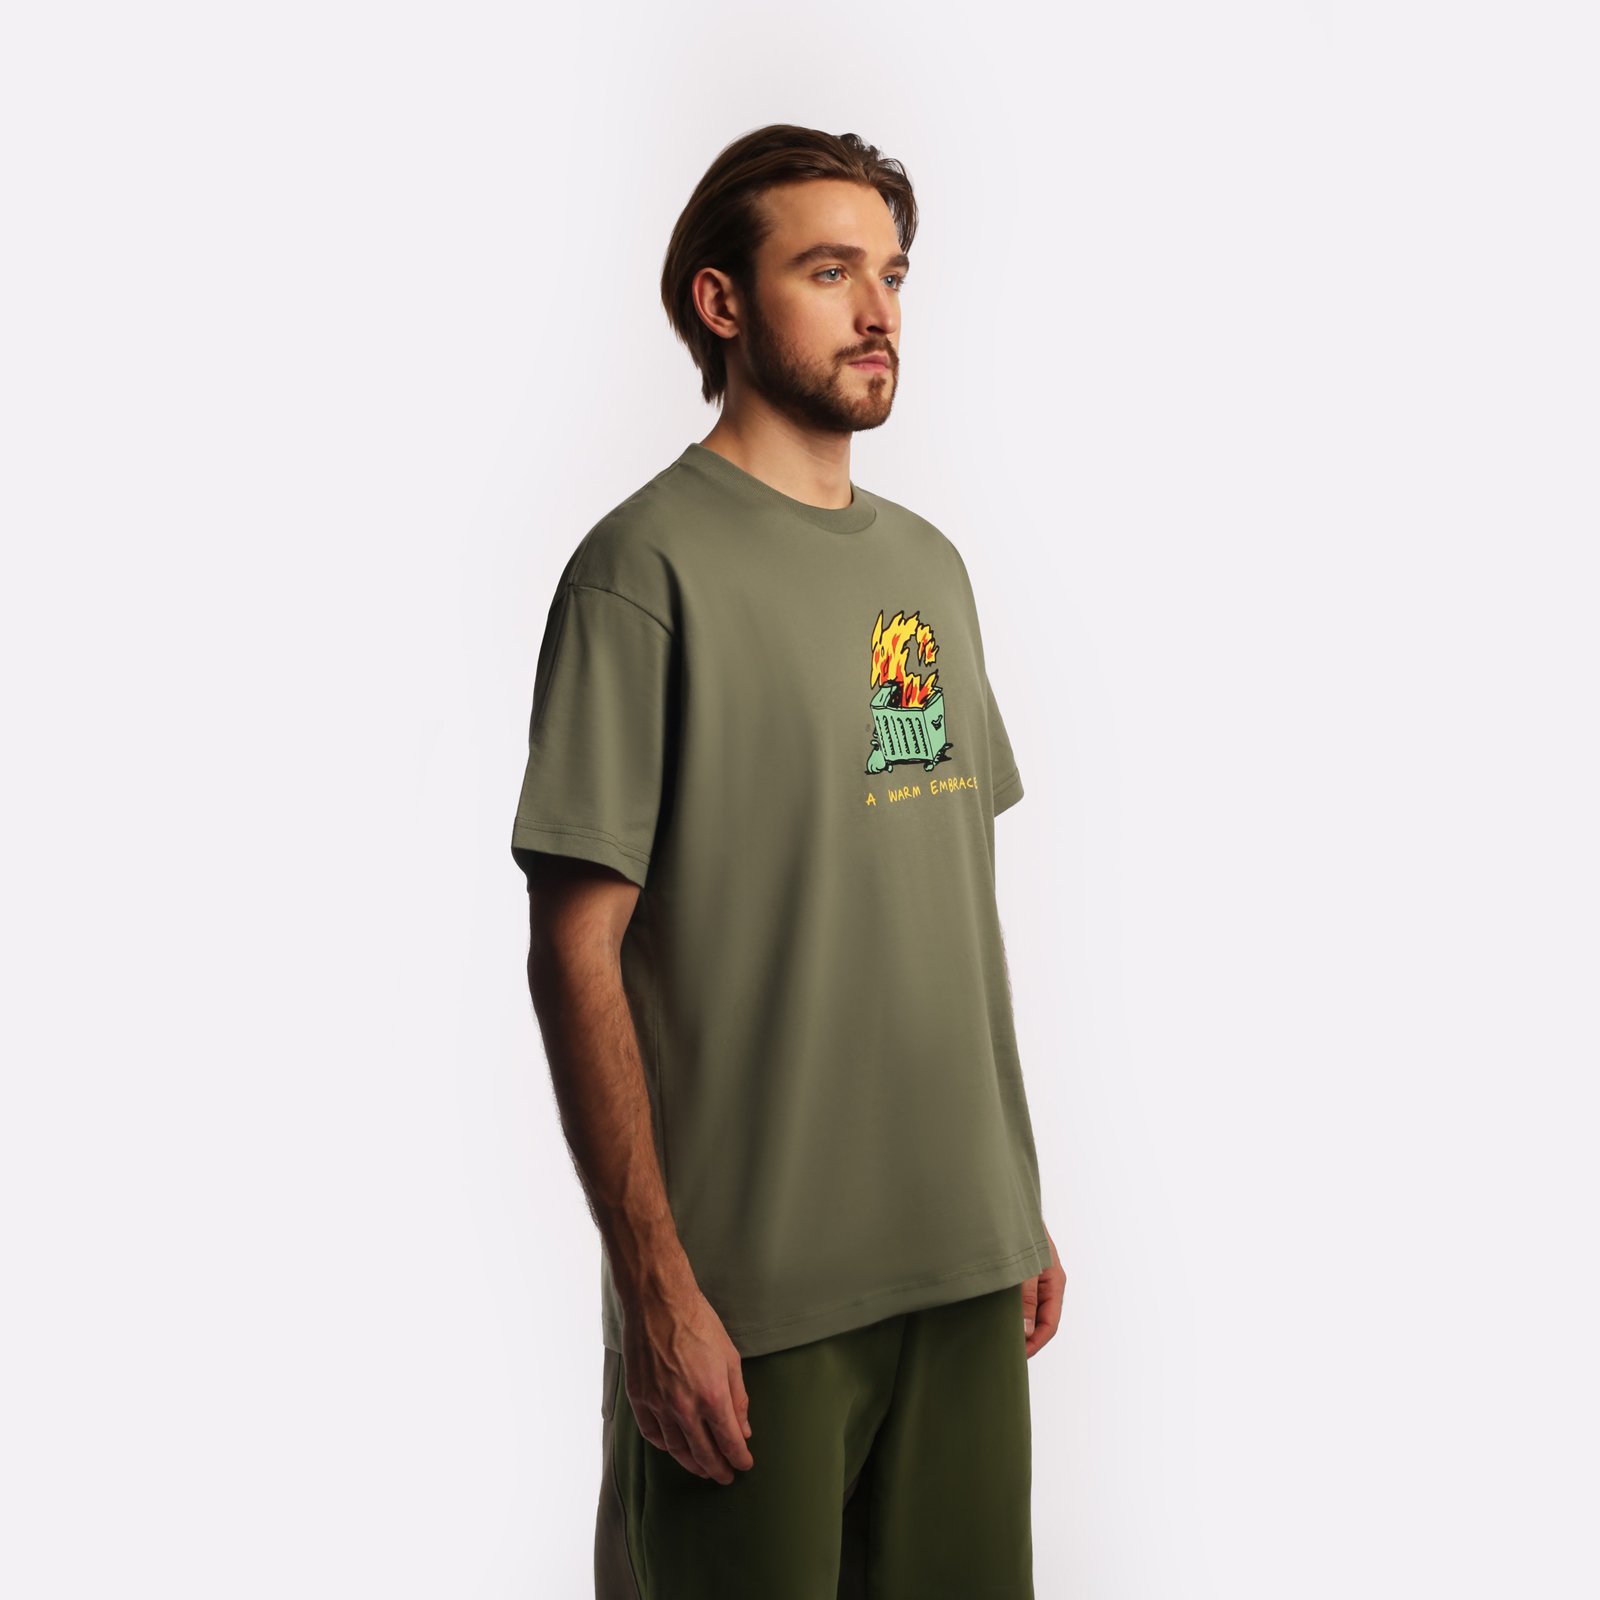 мужская футболка Carhartt WIP S/S Warm Embrace T-Shirt  (I032390-green)  - цена, описание, фото 3